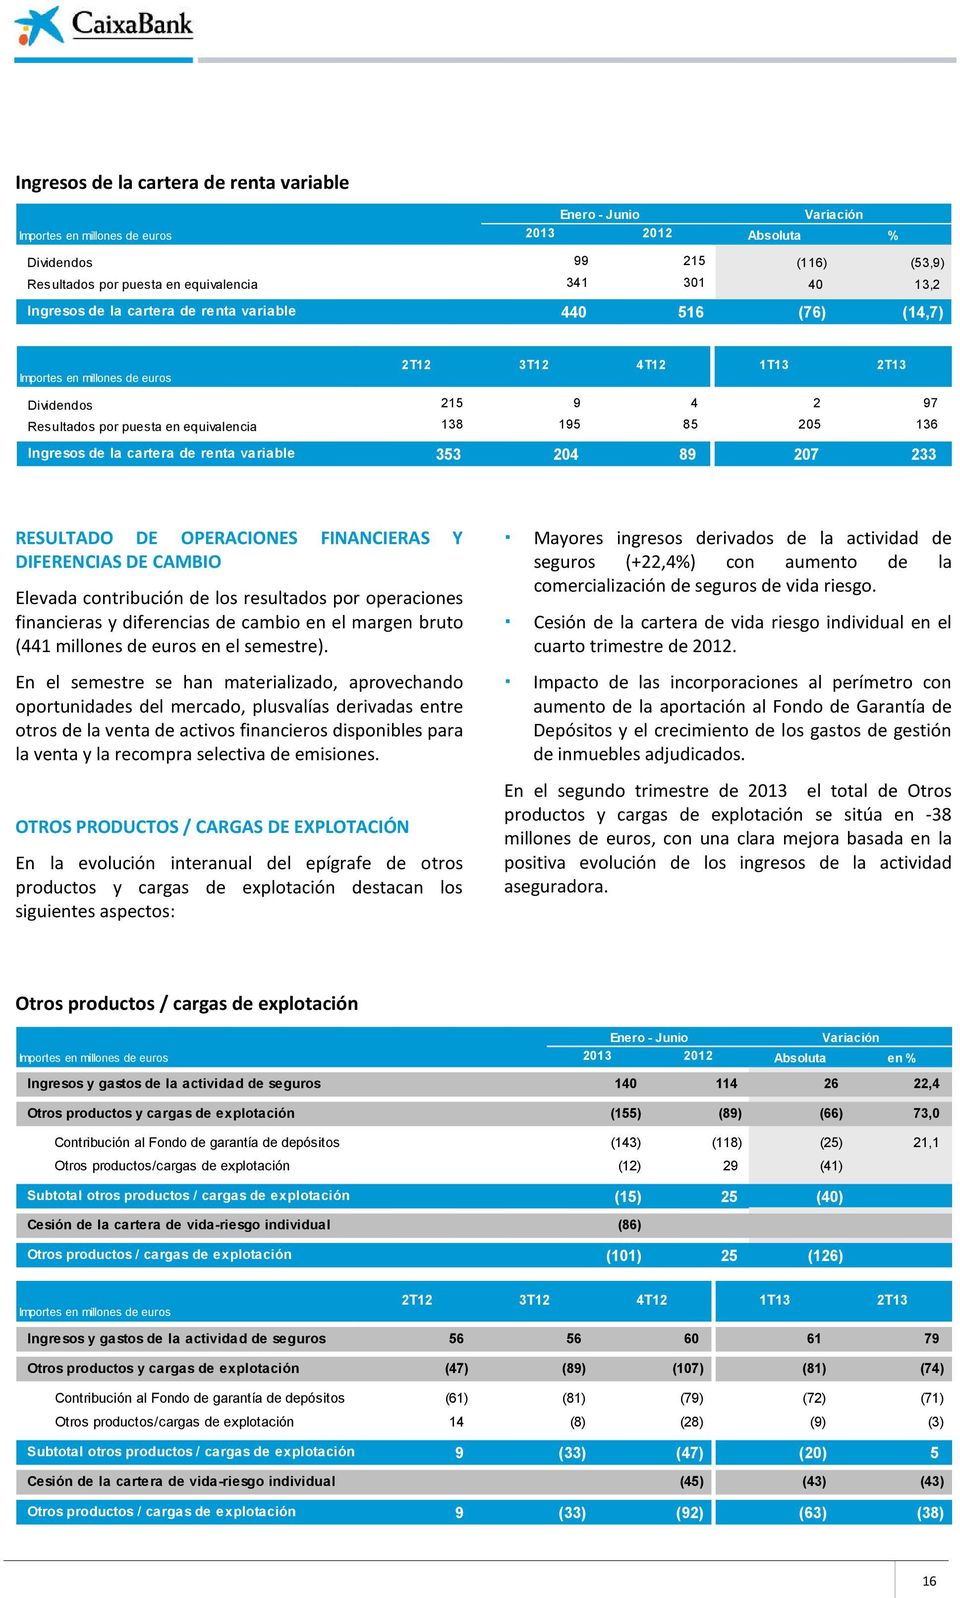 233 RESULTADO DE OPERACIONES FINANCIERAS Y DIFERENCIAS DE CAMBIO Elevada contribución de los resultados por operaciones financieras y diferencias de cambio en el margen bruto (441 millones de euros